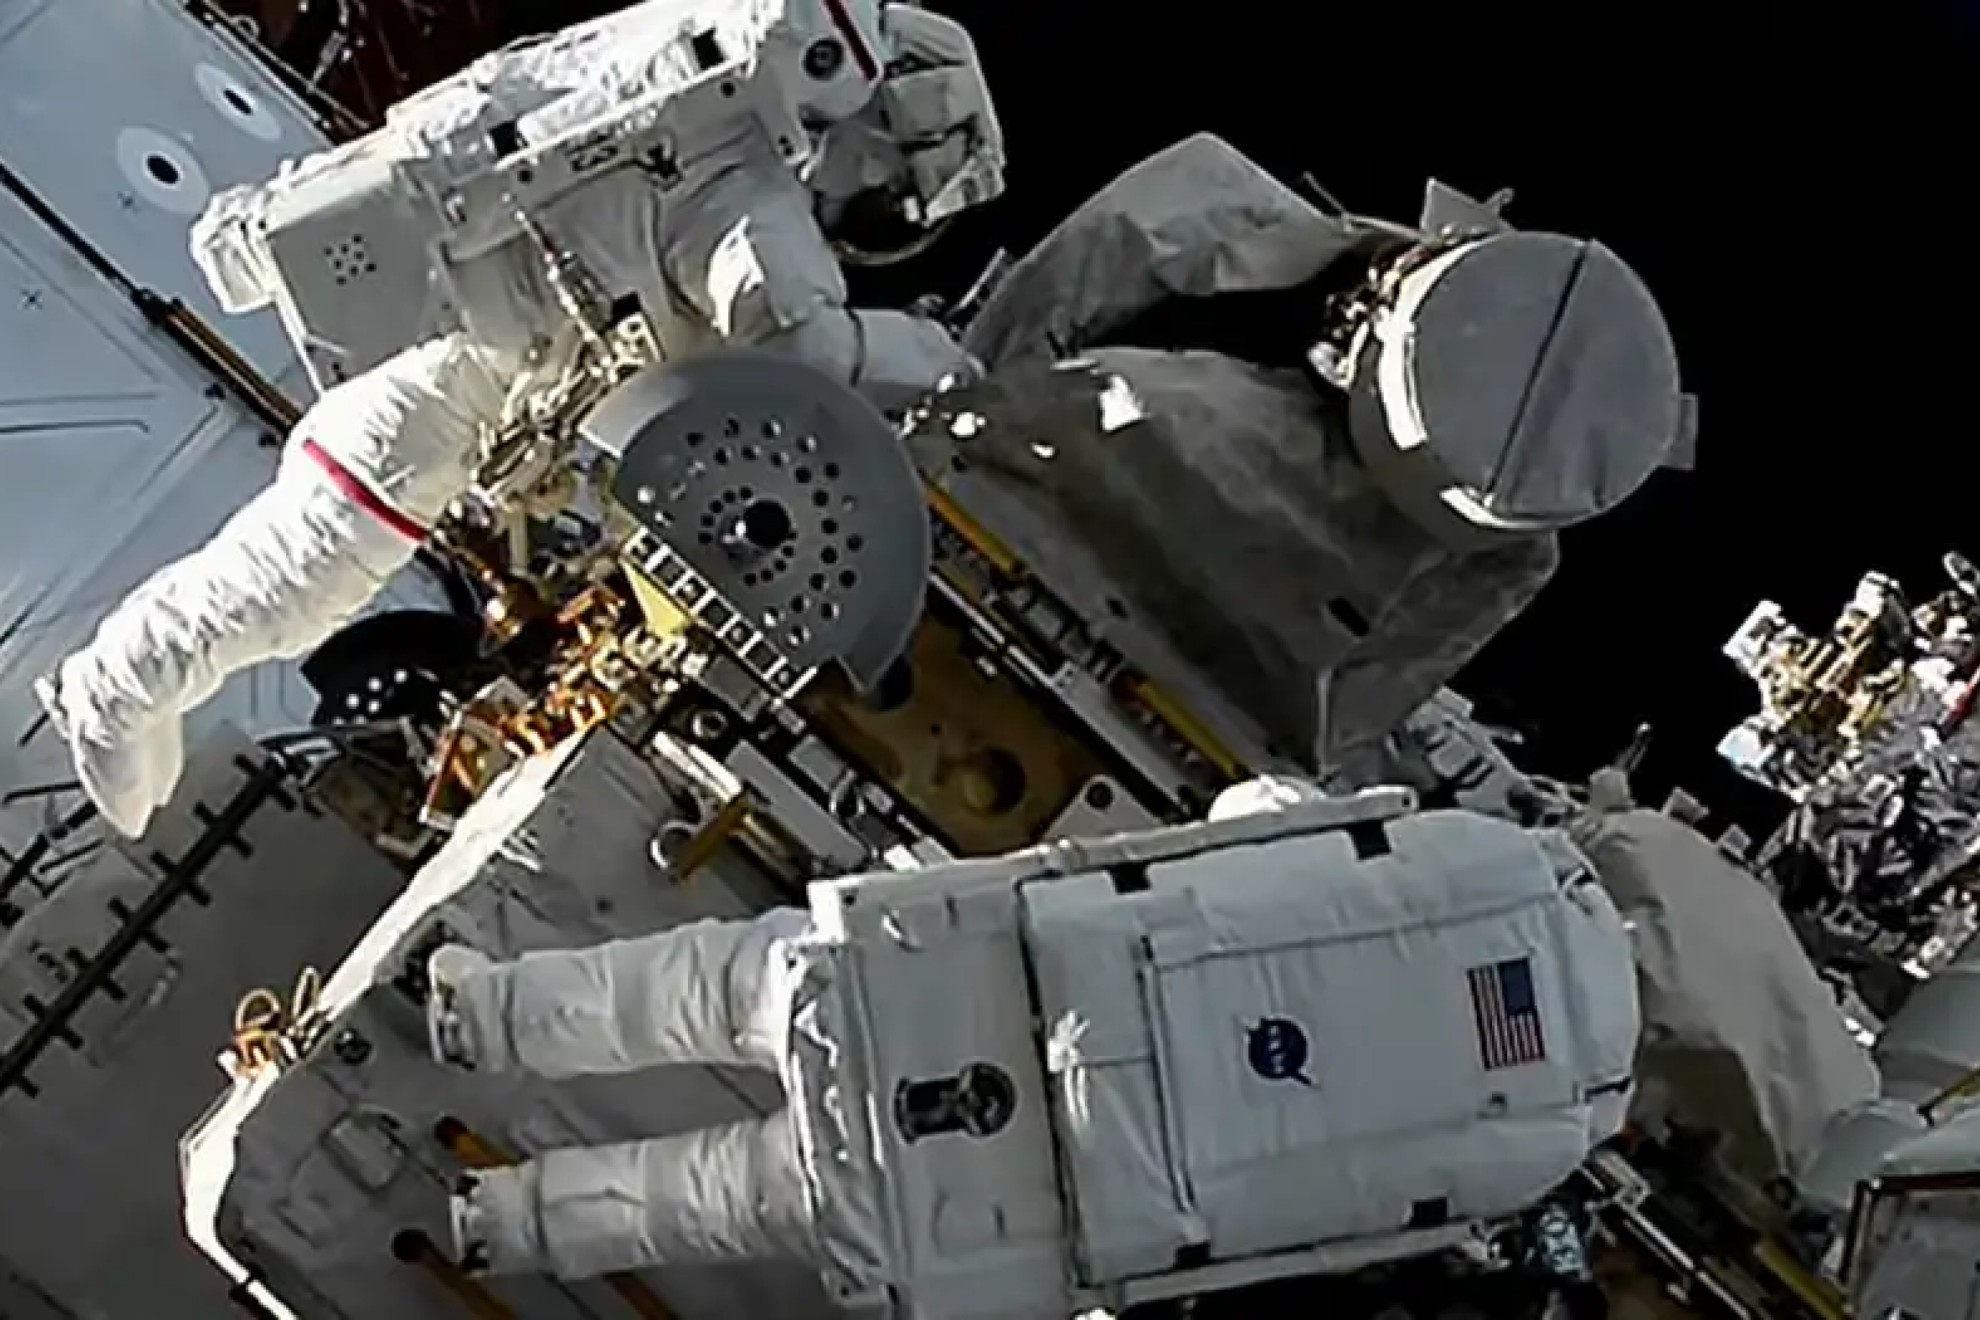 La bolsa de herramientas de un astronauta orbita la Tierra tras escaparse durante un paseo espacial